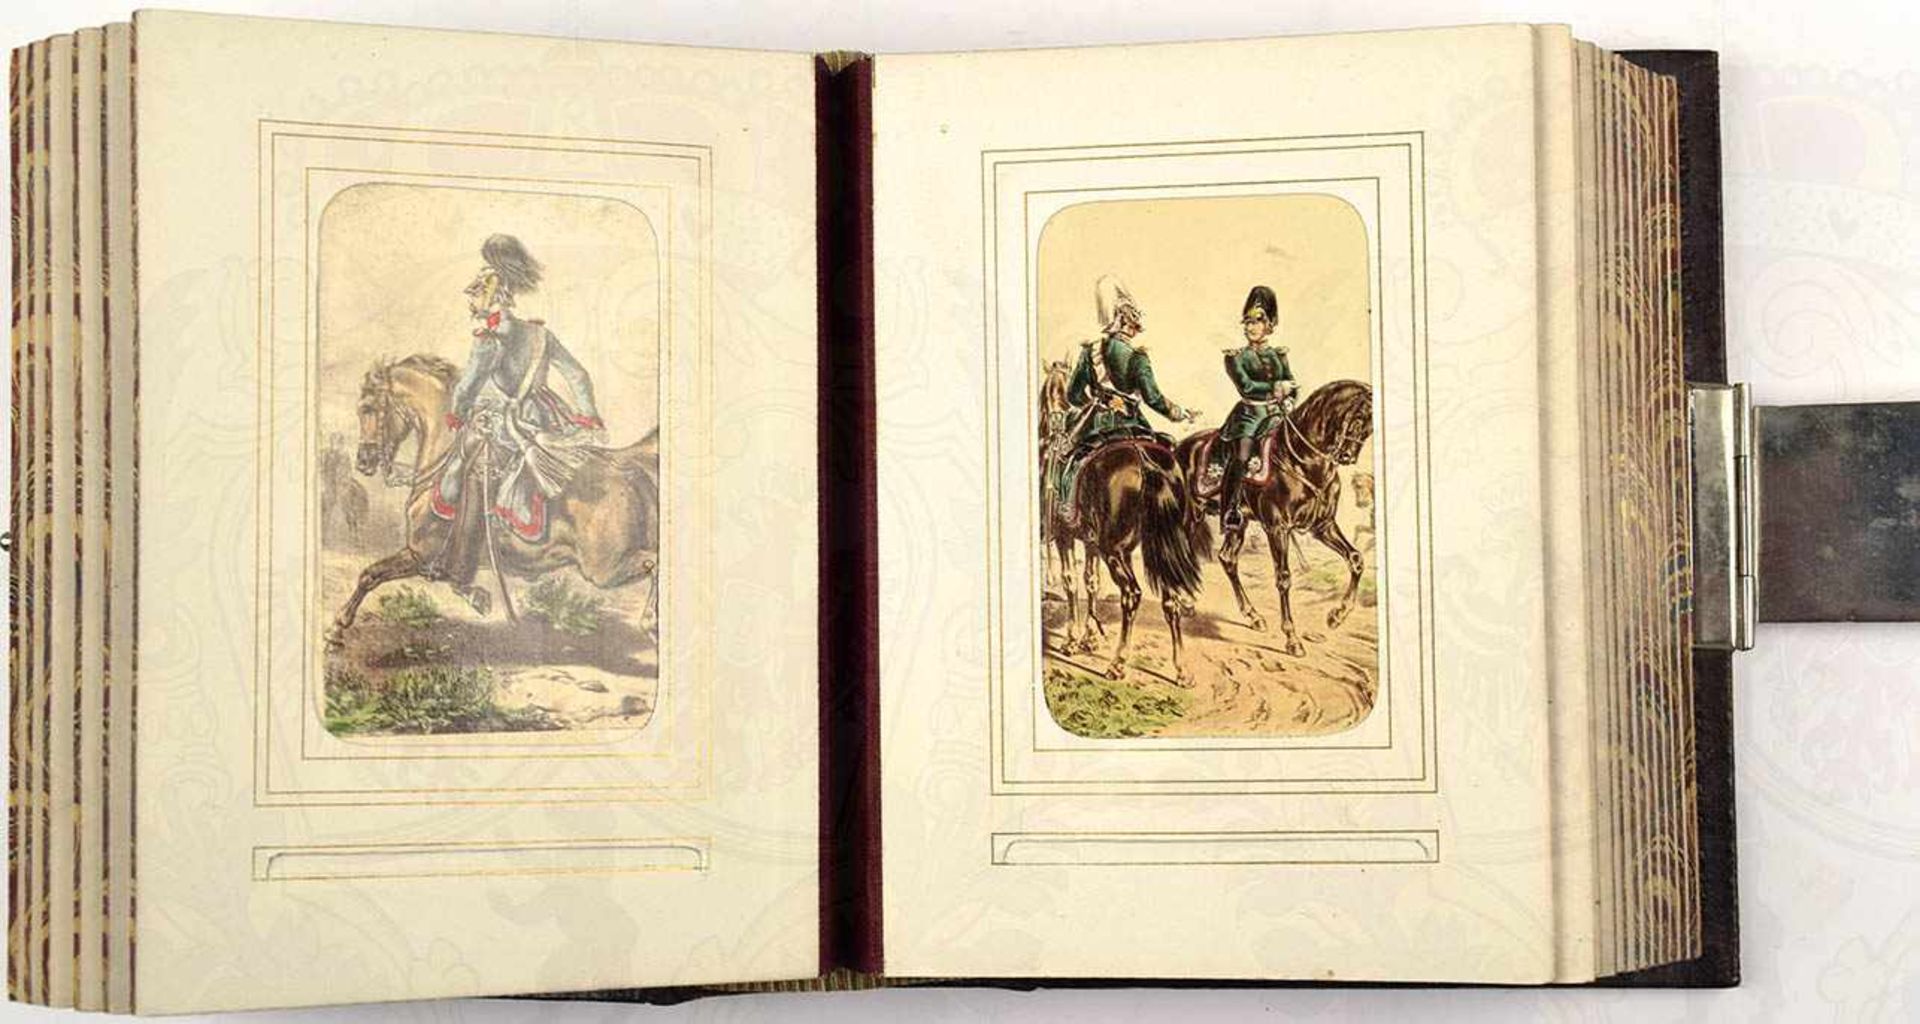 FOTOALBUM mit 40 gesteckten, handcolorierten Visitfotos, preußische Uniformen etw. 1860-65, nach - Bild 3 aus 7